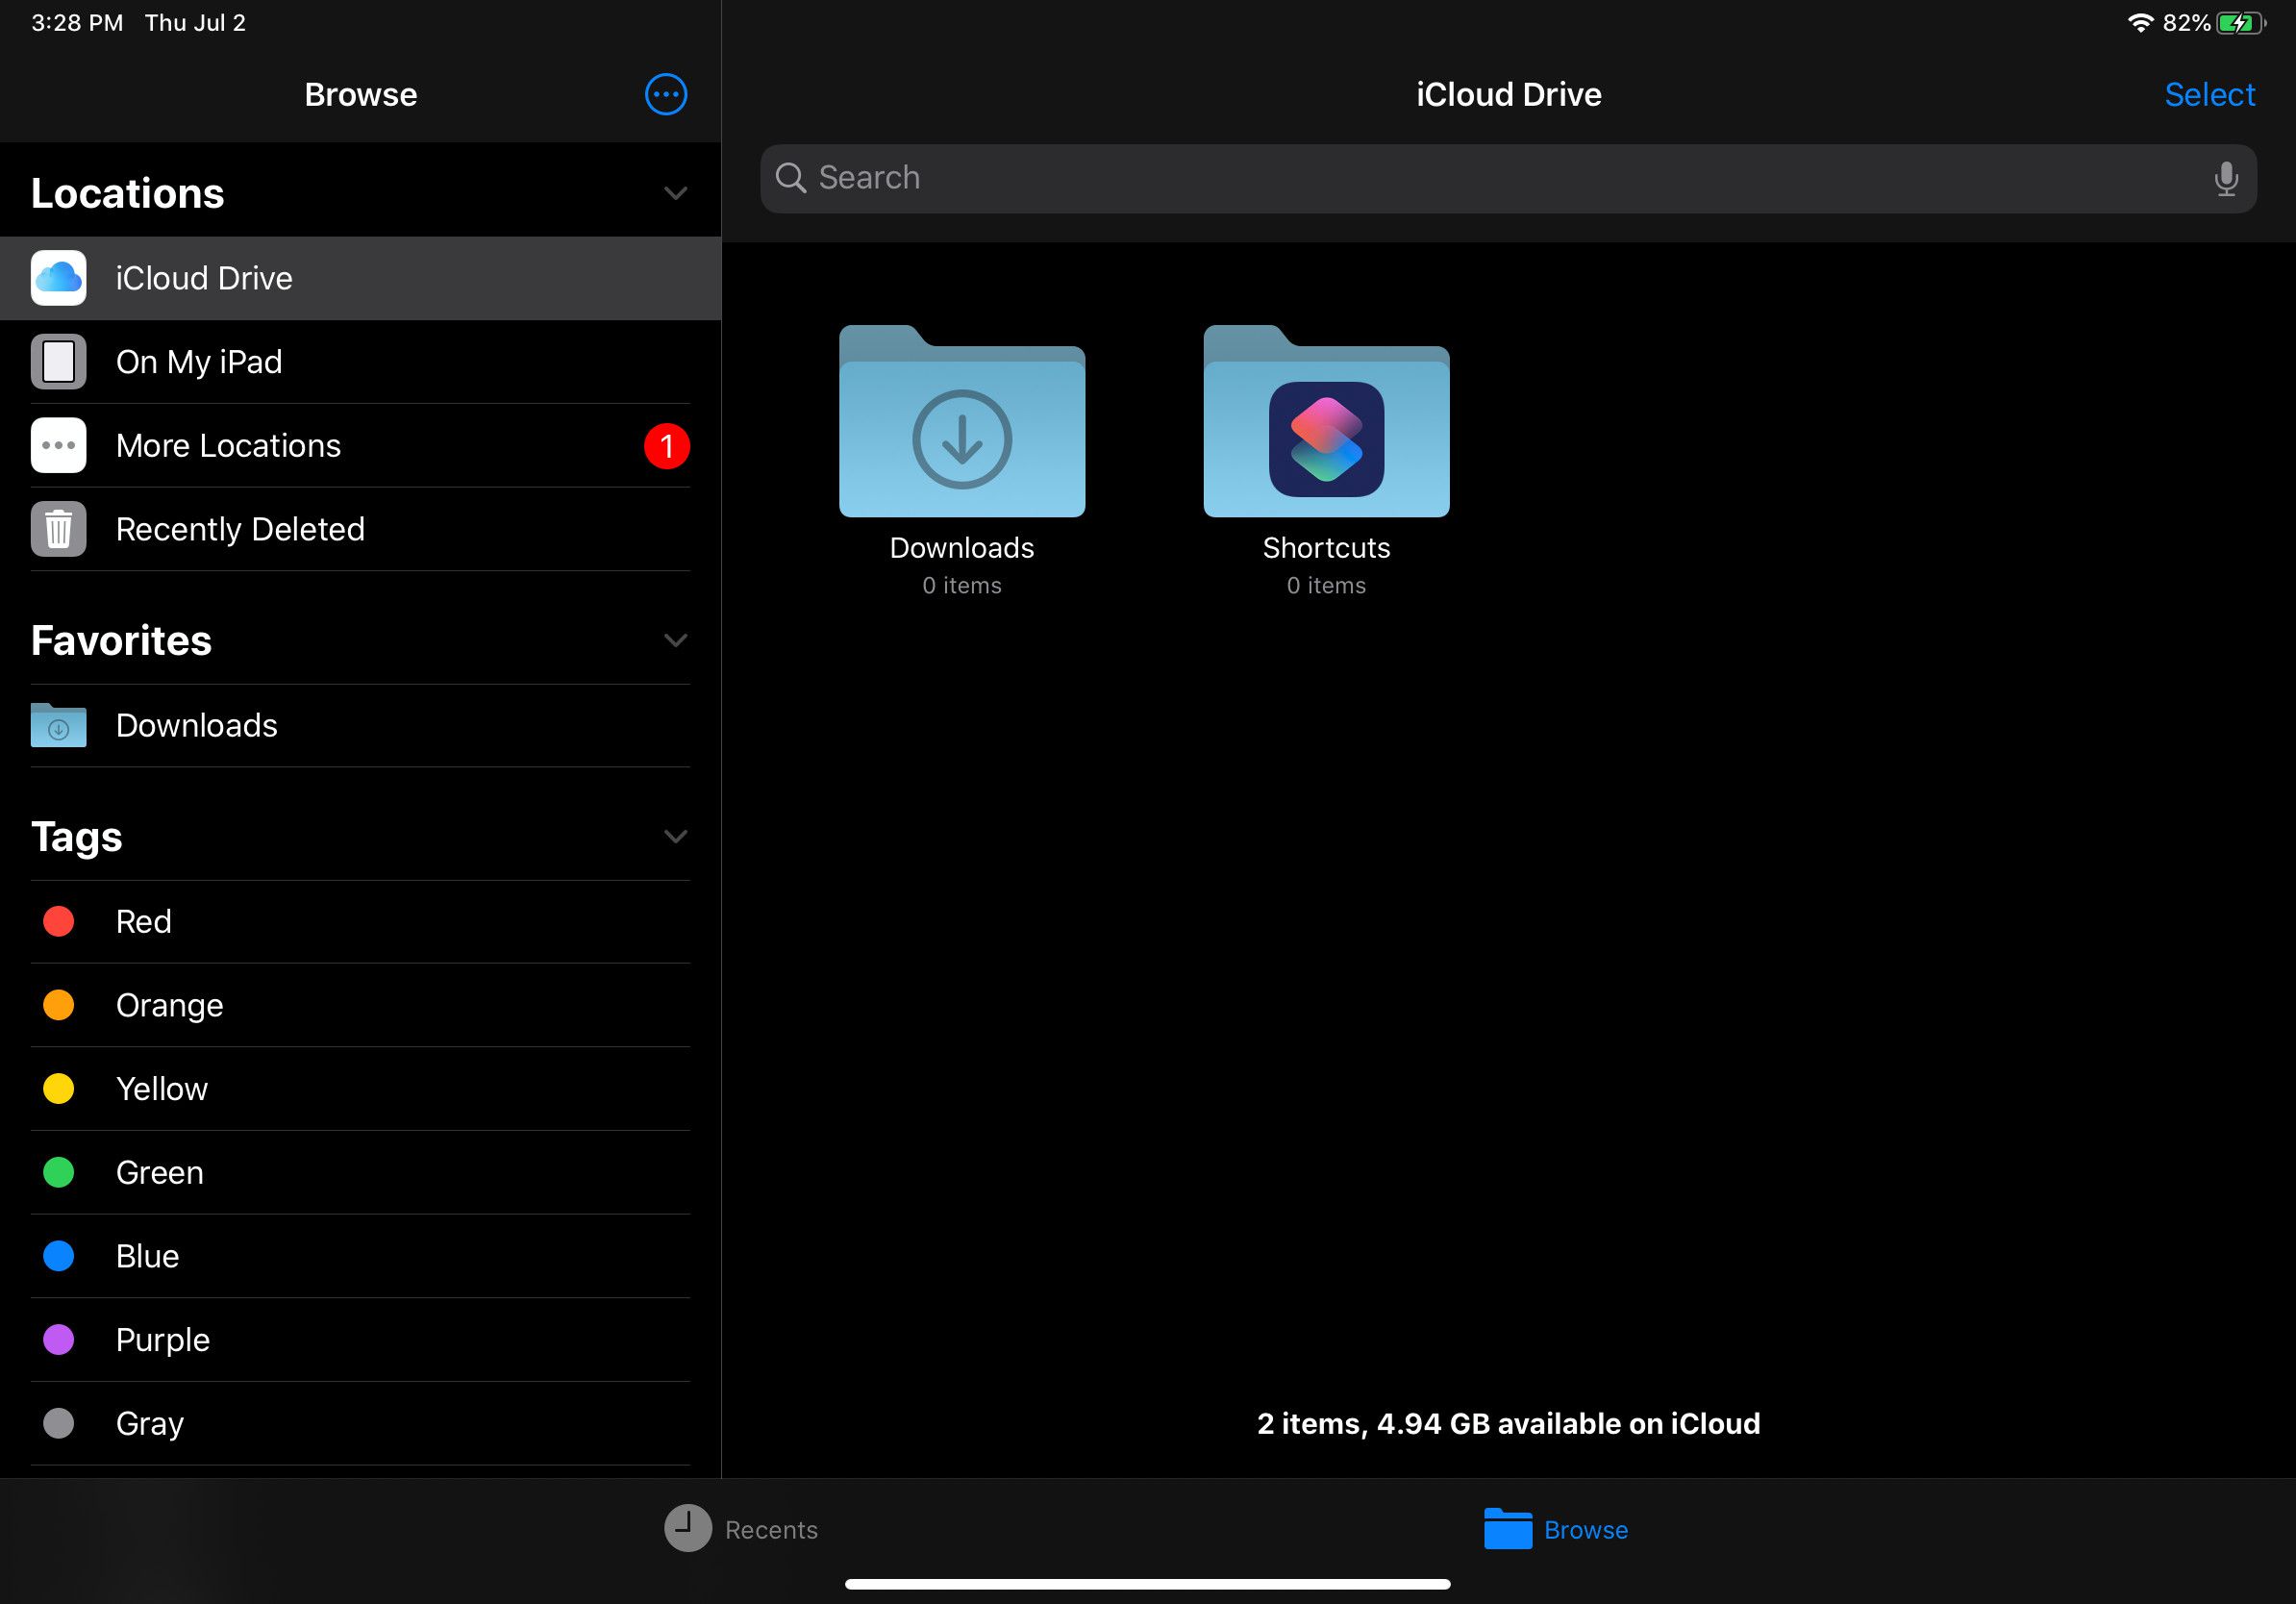 Je kunt je downloads op iOS vinden via de iCloud Drive